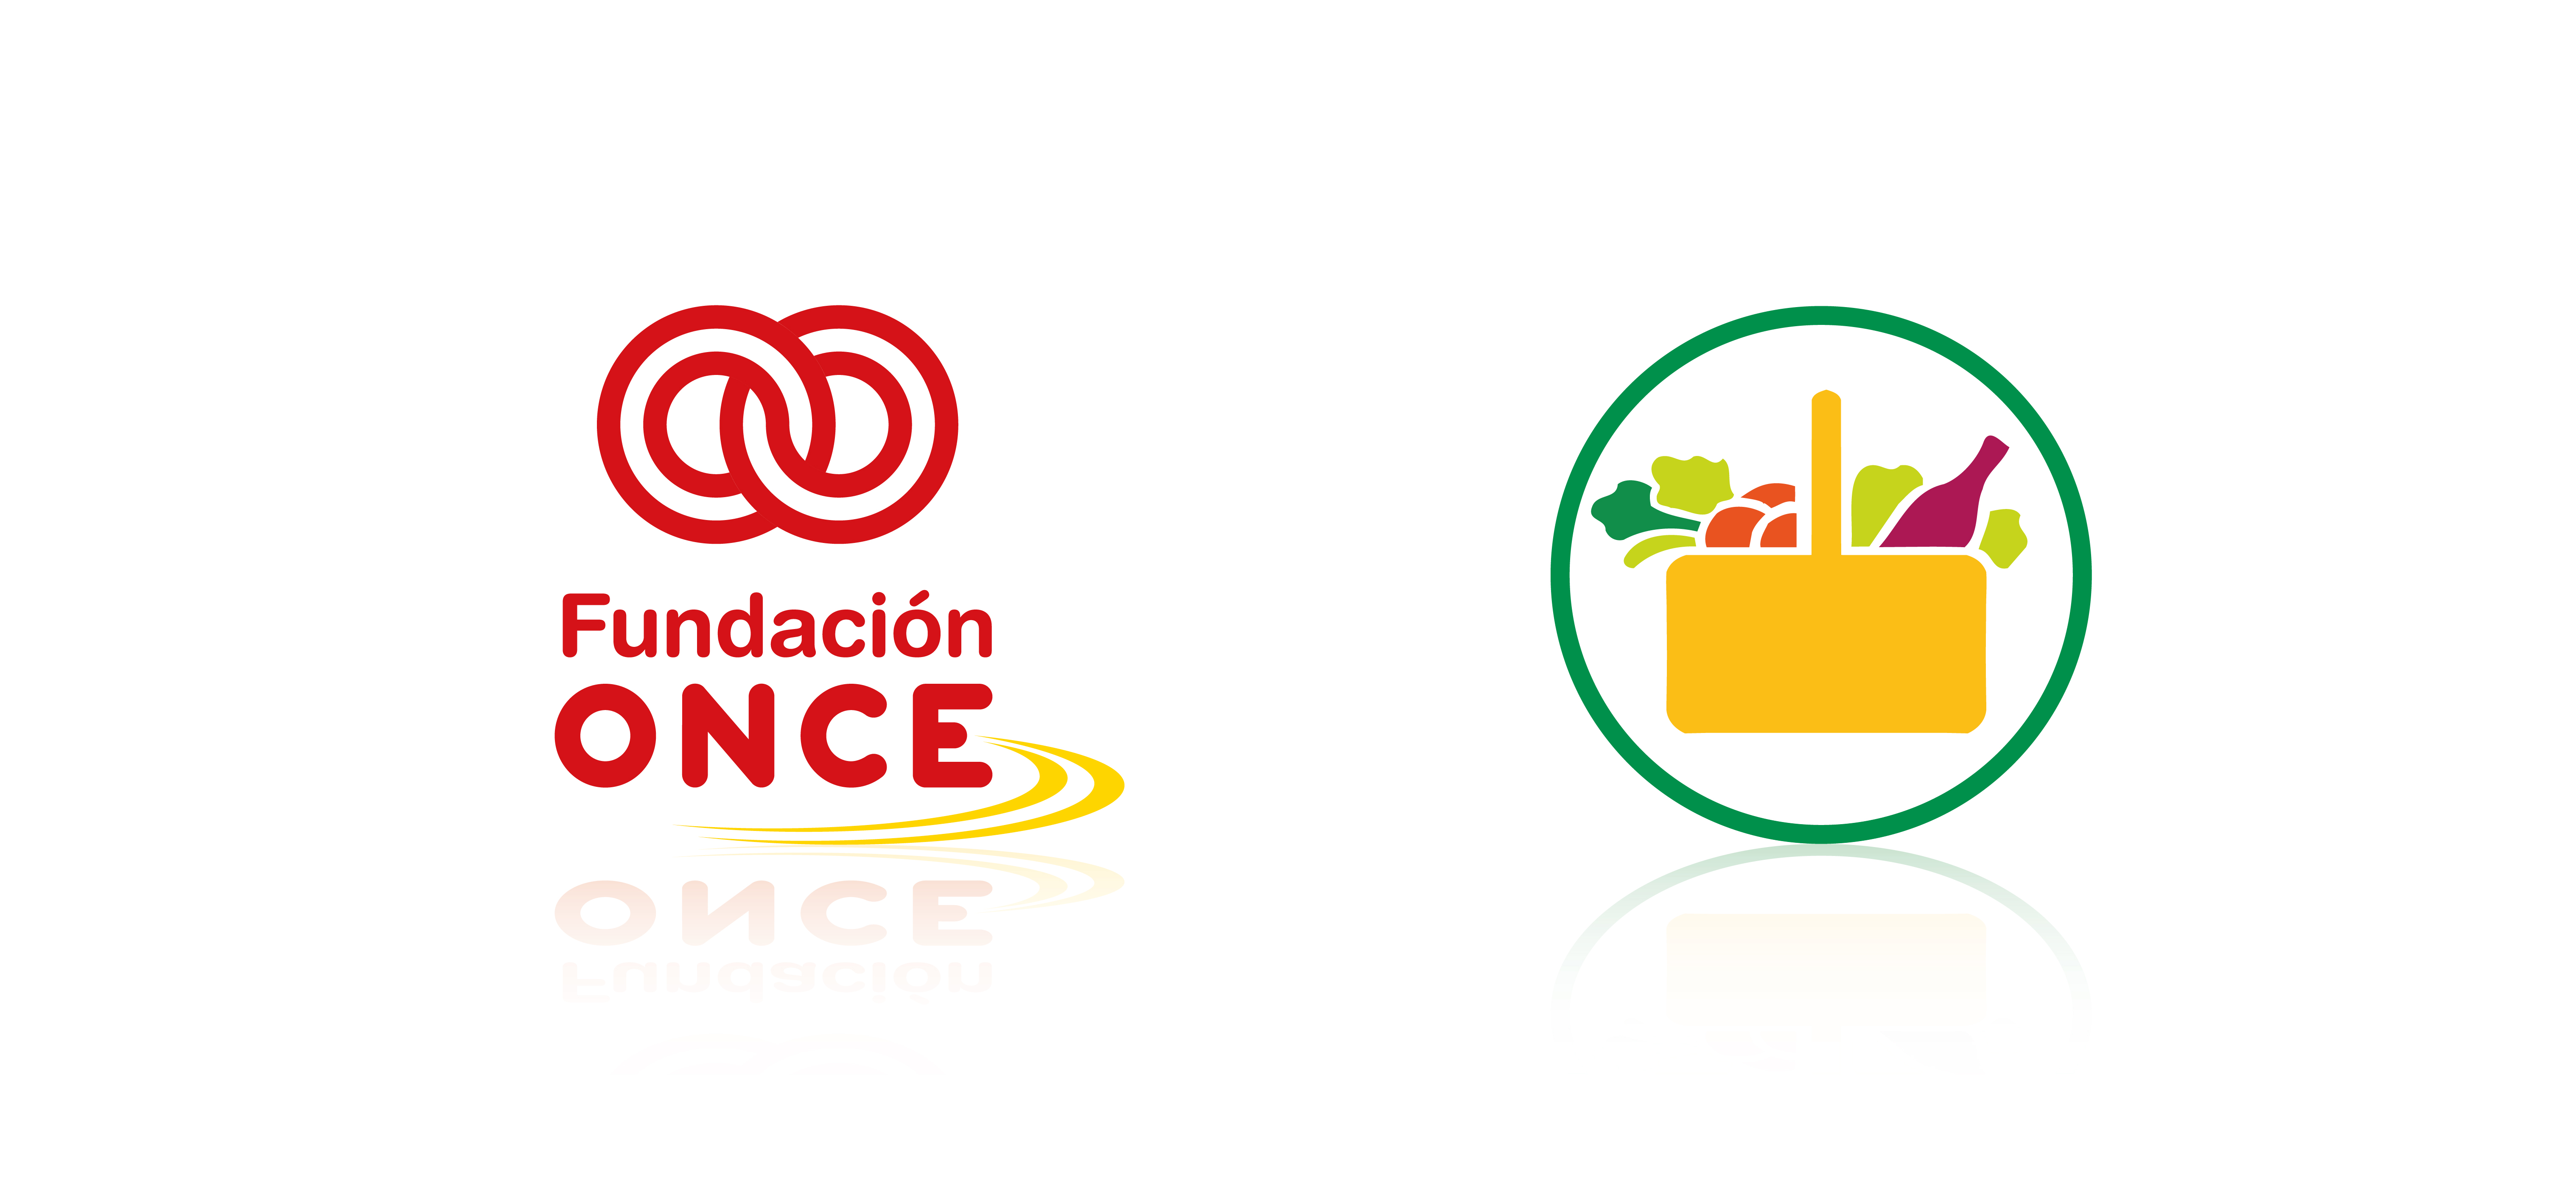 Mercadona and Fundación ONCE logos